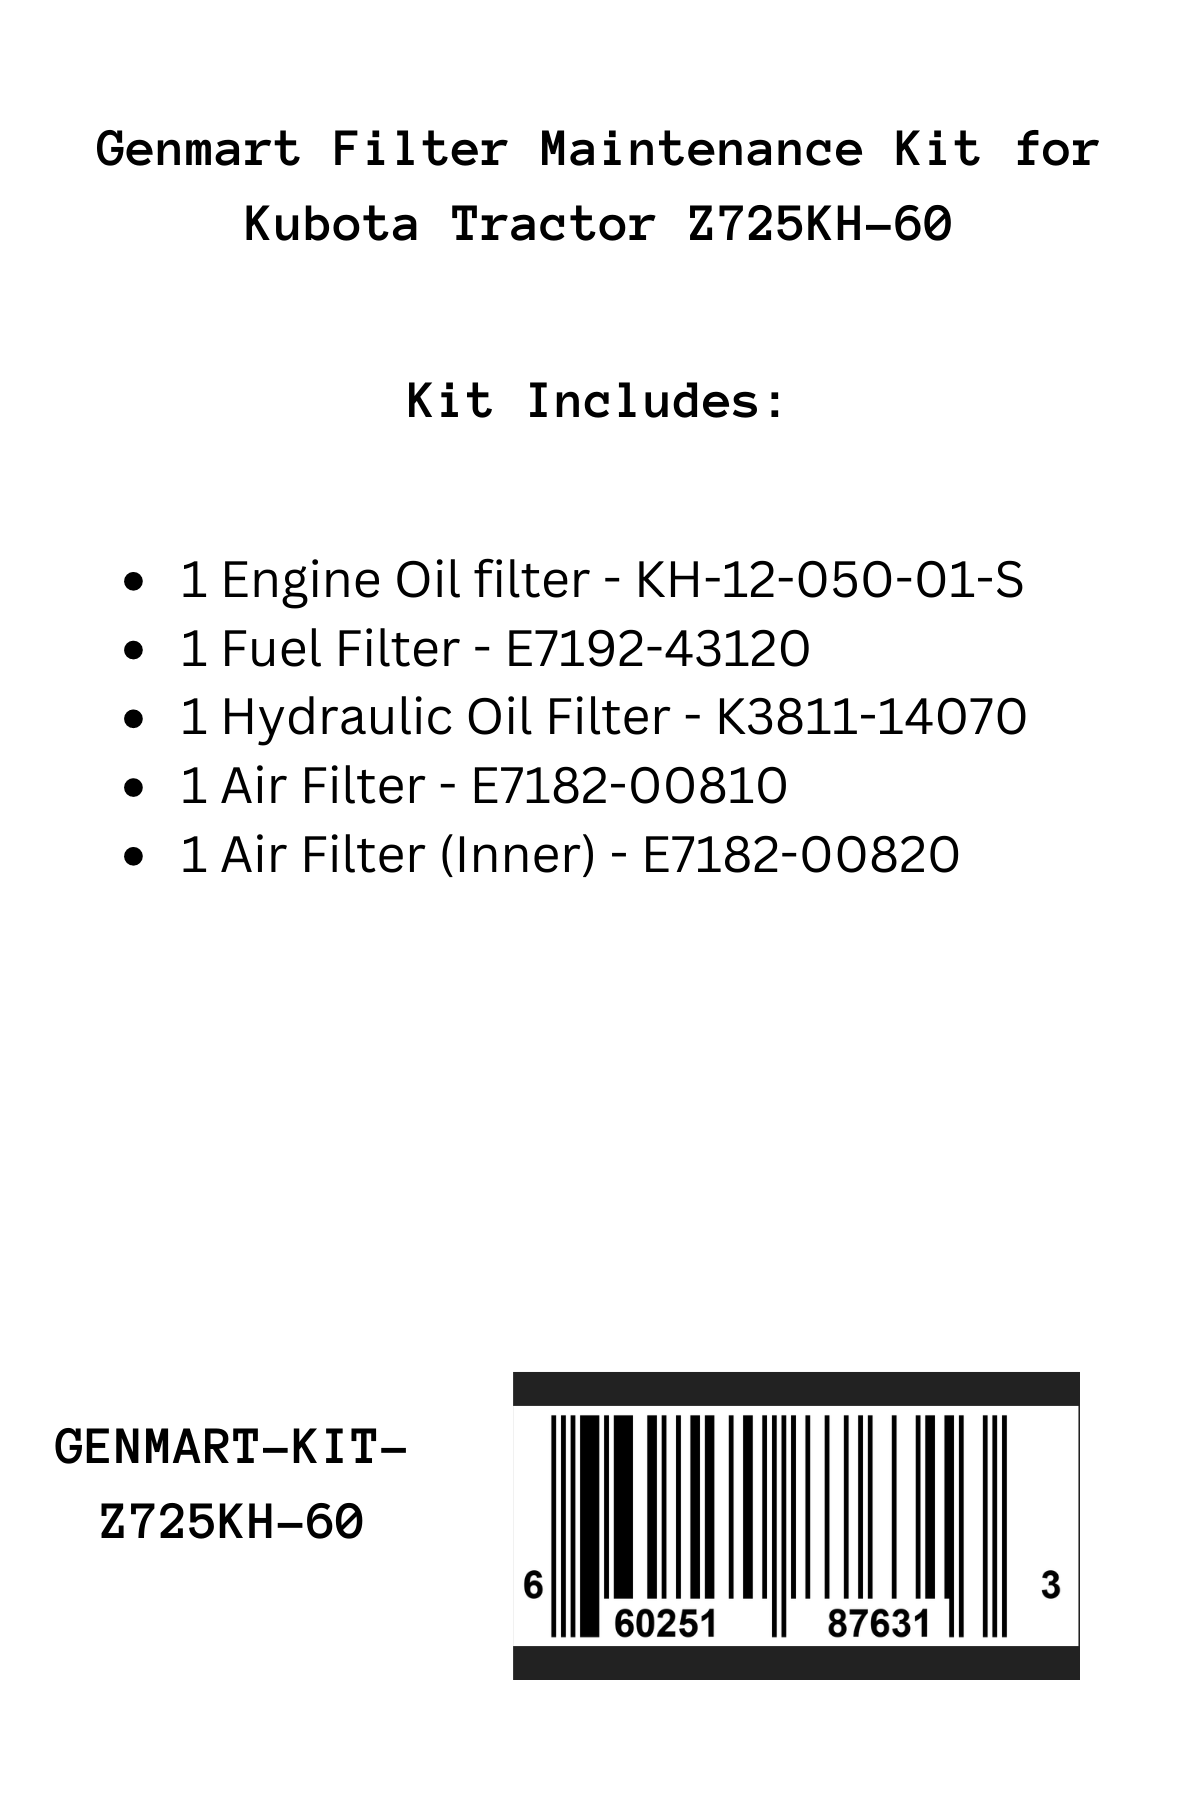 Genmart Maintenance Kit for Kubota Tractor Z725KH-60